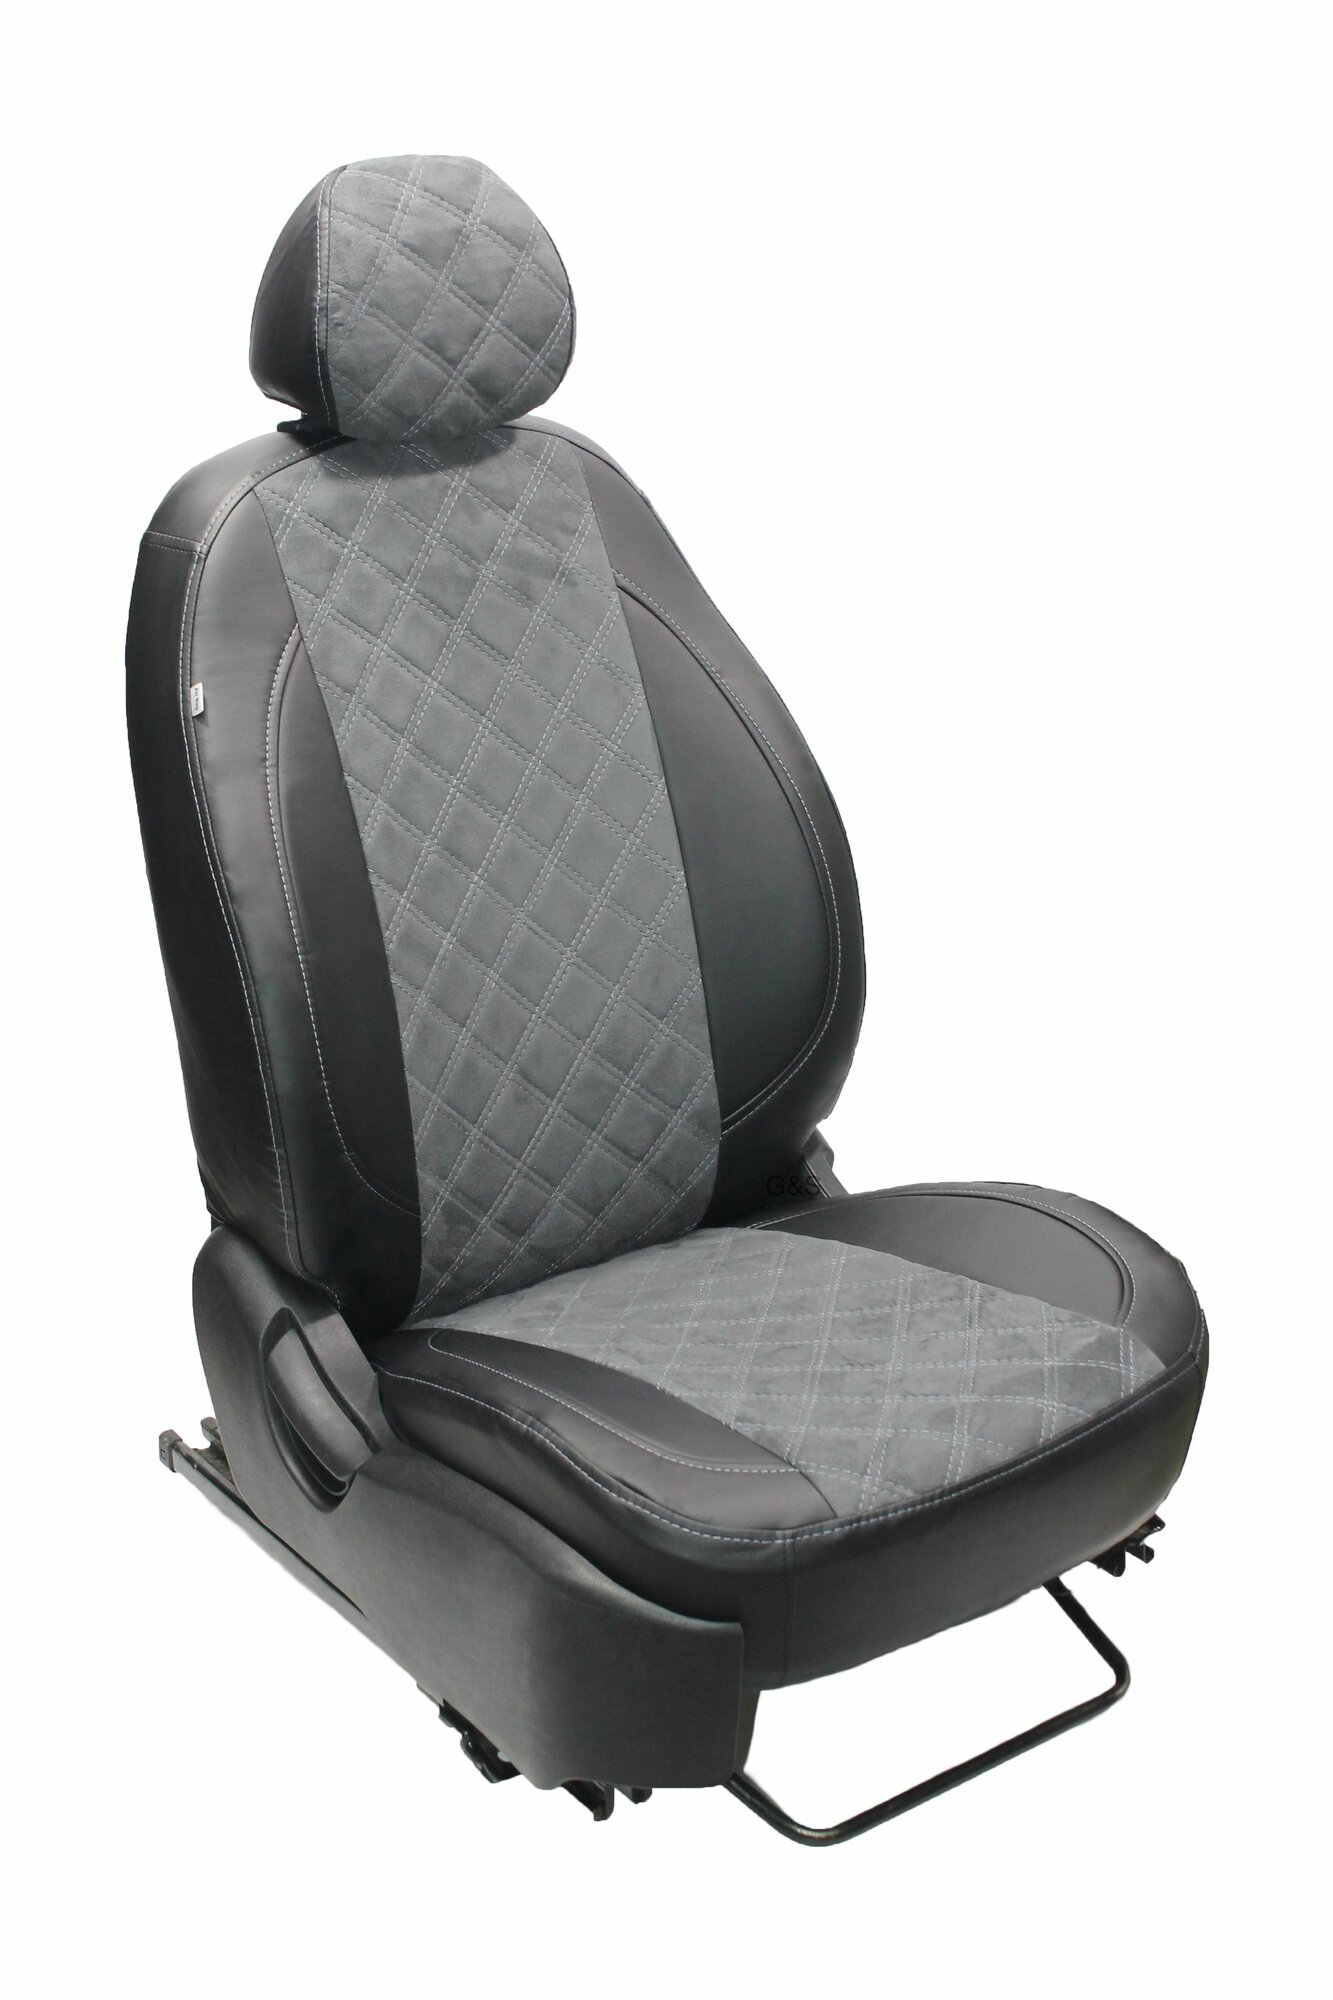 Чехлы для автомобильных сидений комплект Premium на TOYOTA CAMRY (2001-2006) седан, авточехлы модельные экокожа, серая вставка алькантара ромб